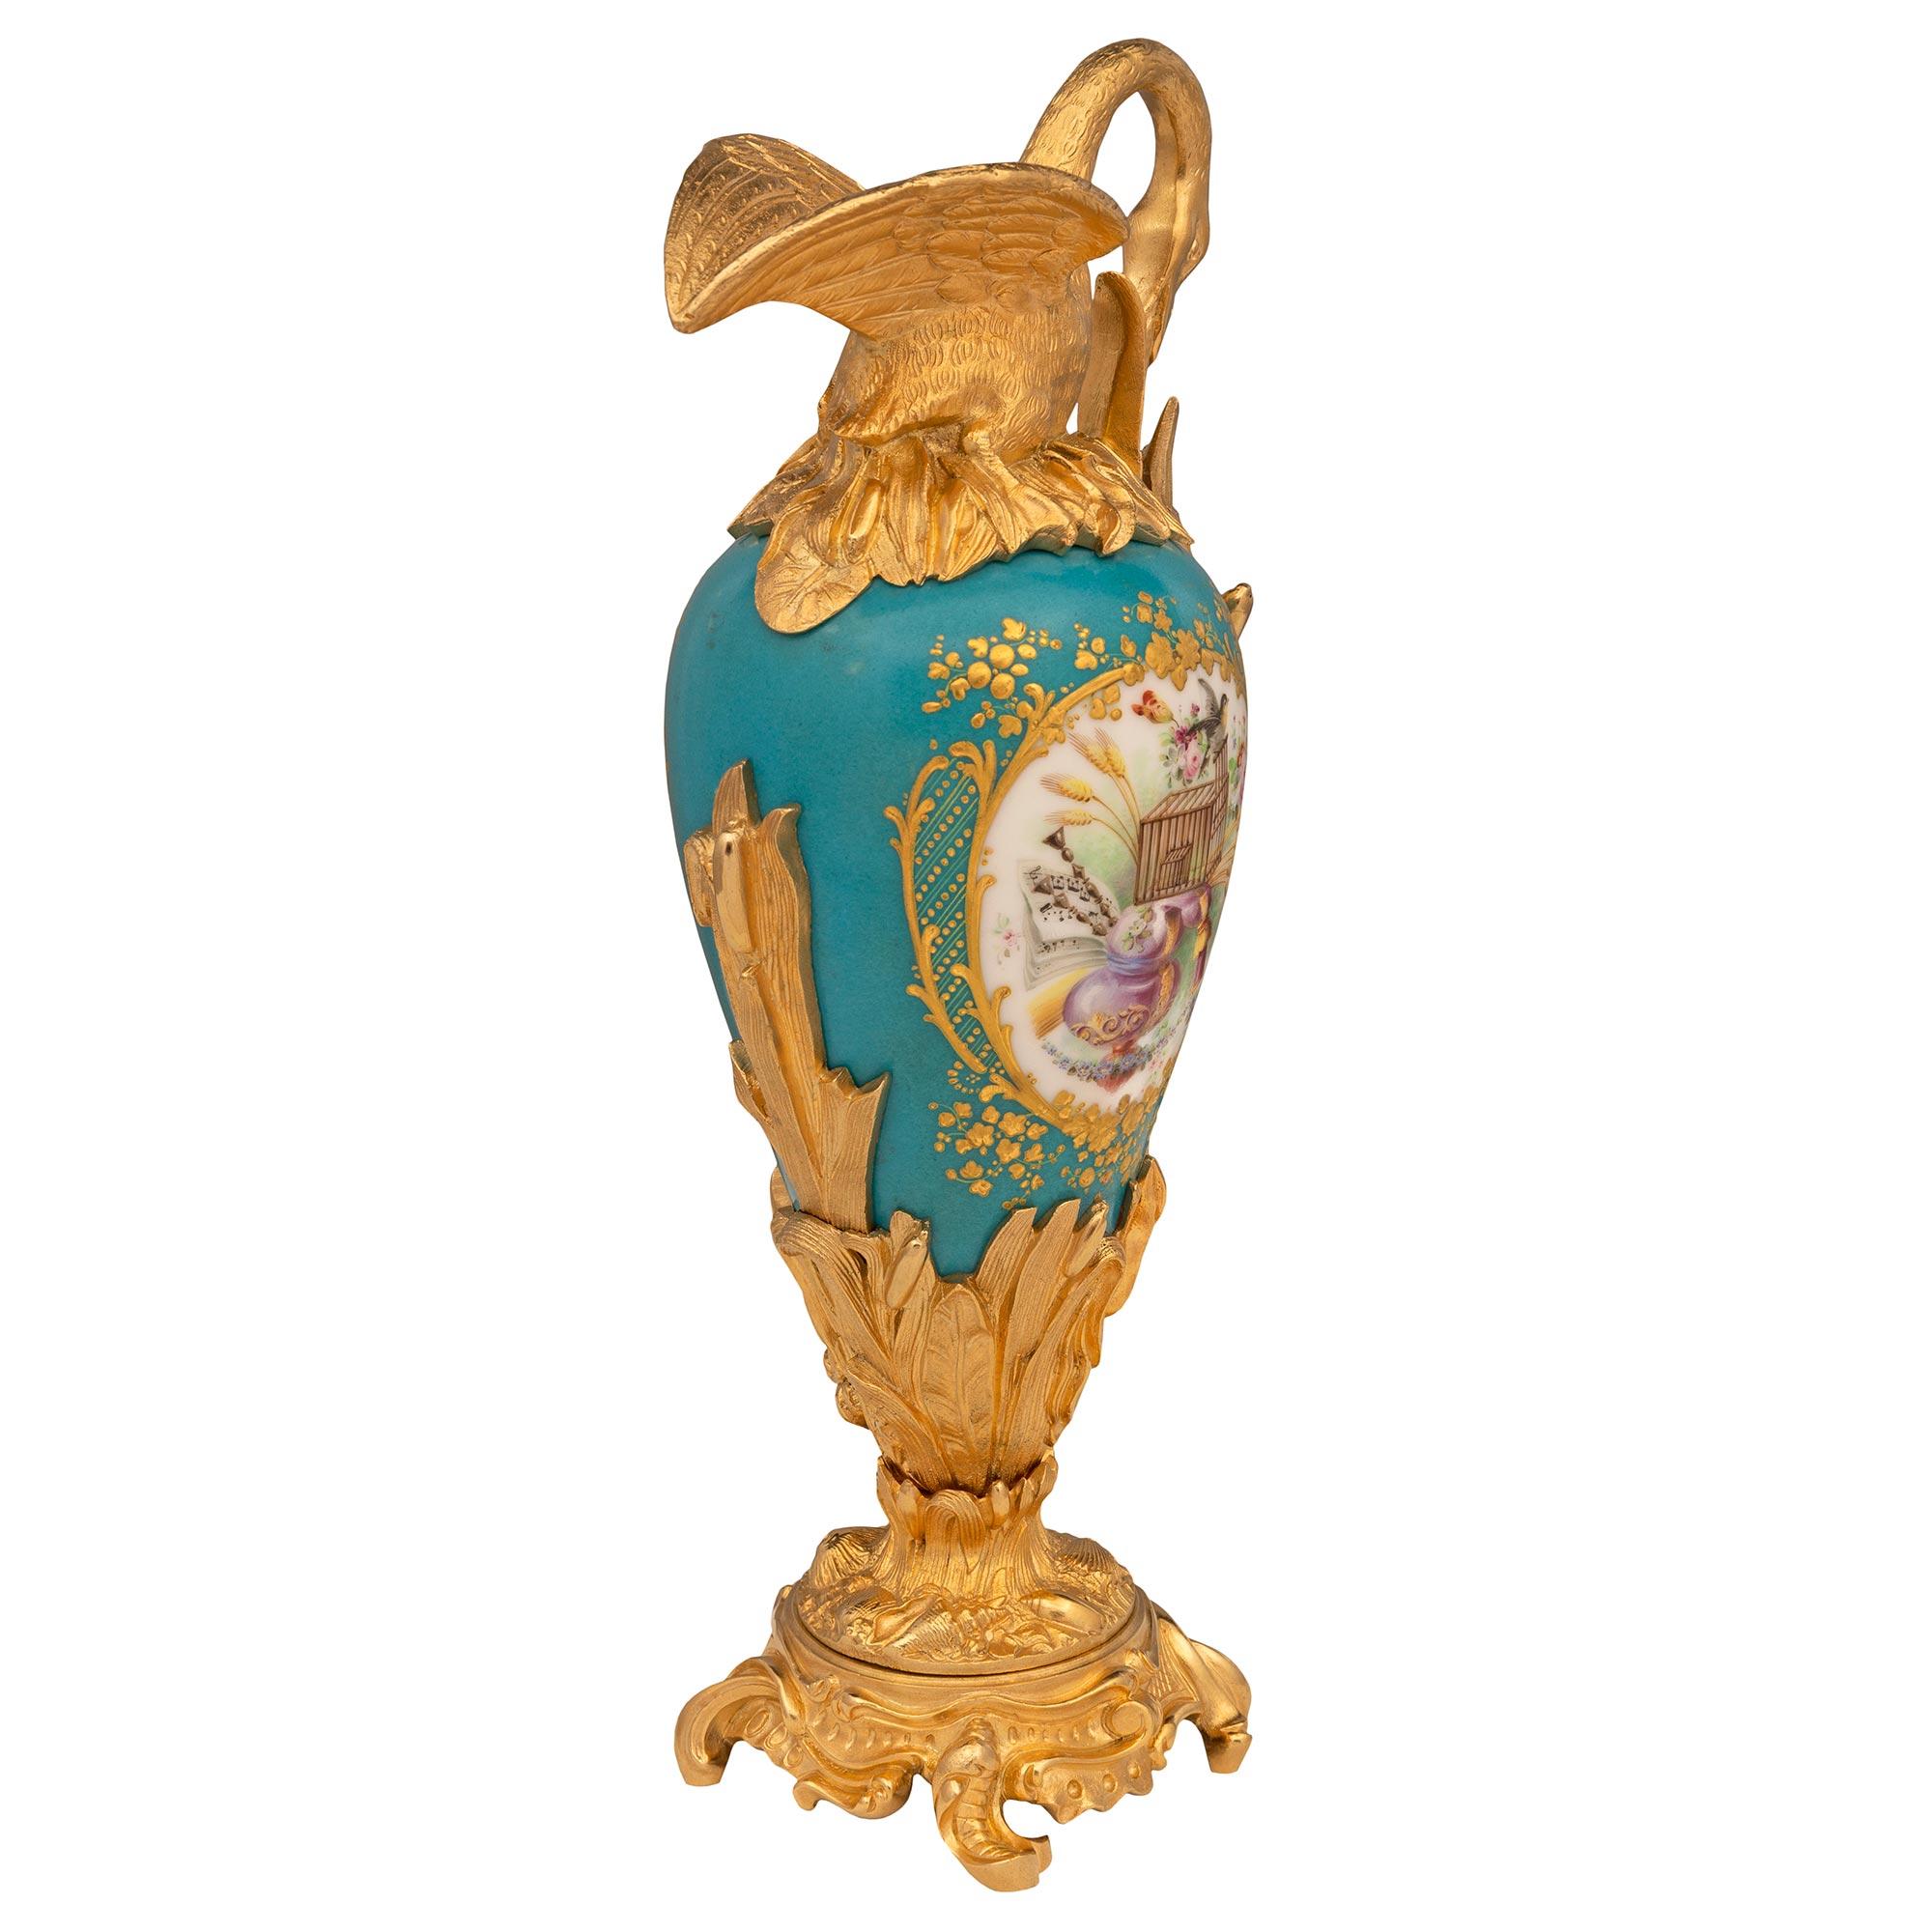 Paire d'élégantes aiguières en porcelaine de Sèvres et bronze doré, de style Louis XVI et d'époque Belle Époque, datant du XIXe siècle. Chaque aiguière est surélevée par une base en bronze doré saisissante, ornée de mouvements feuillagés uniques et